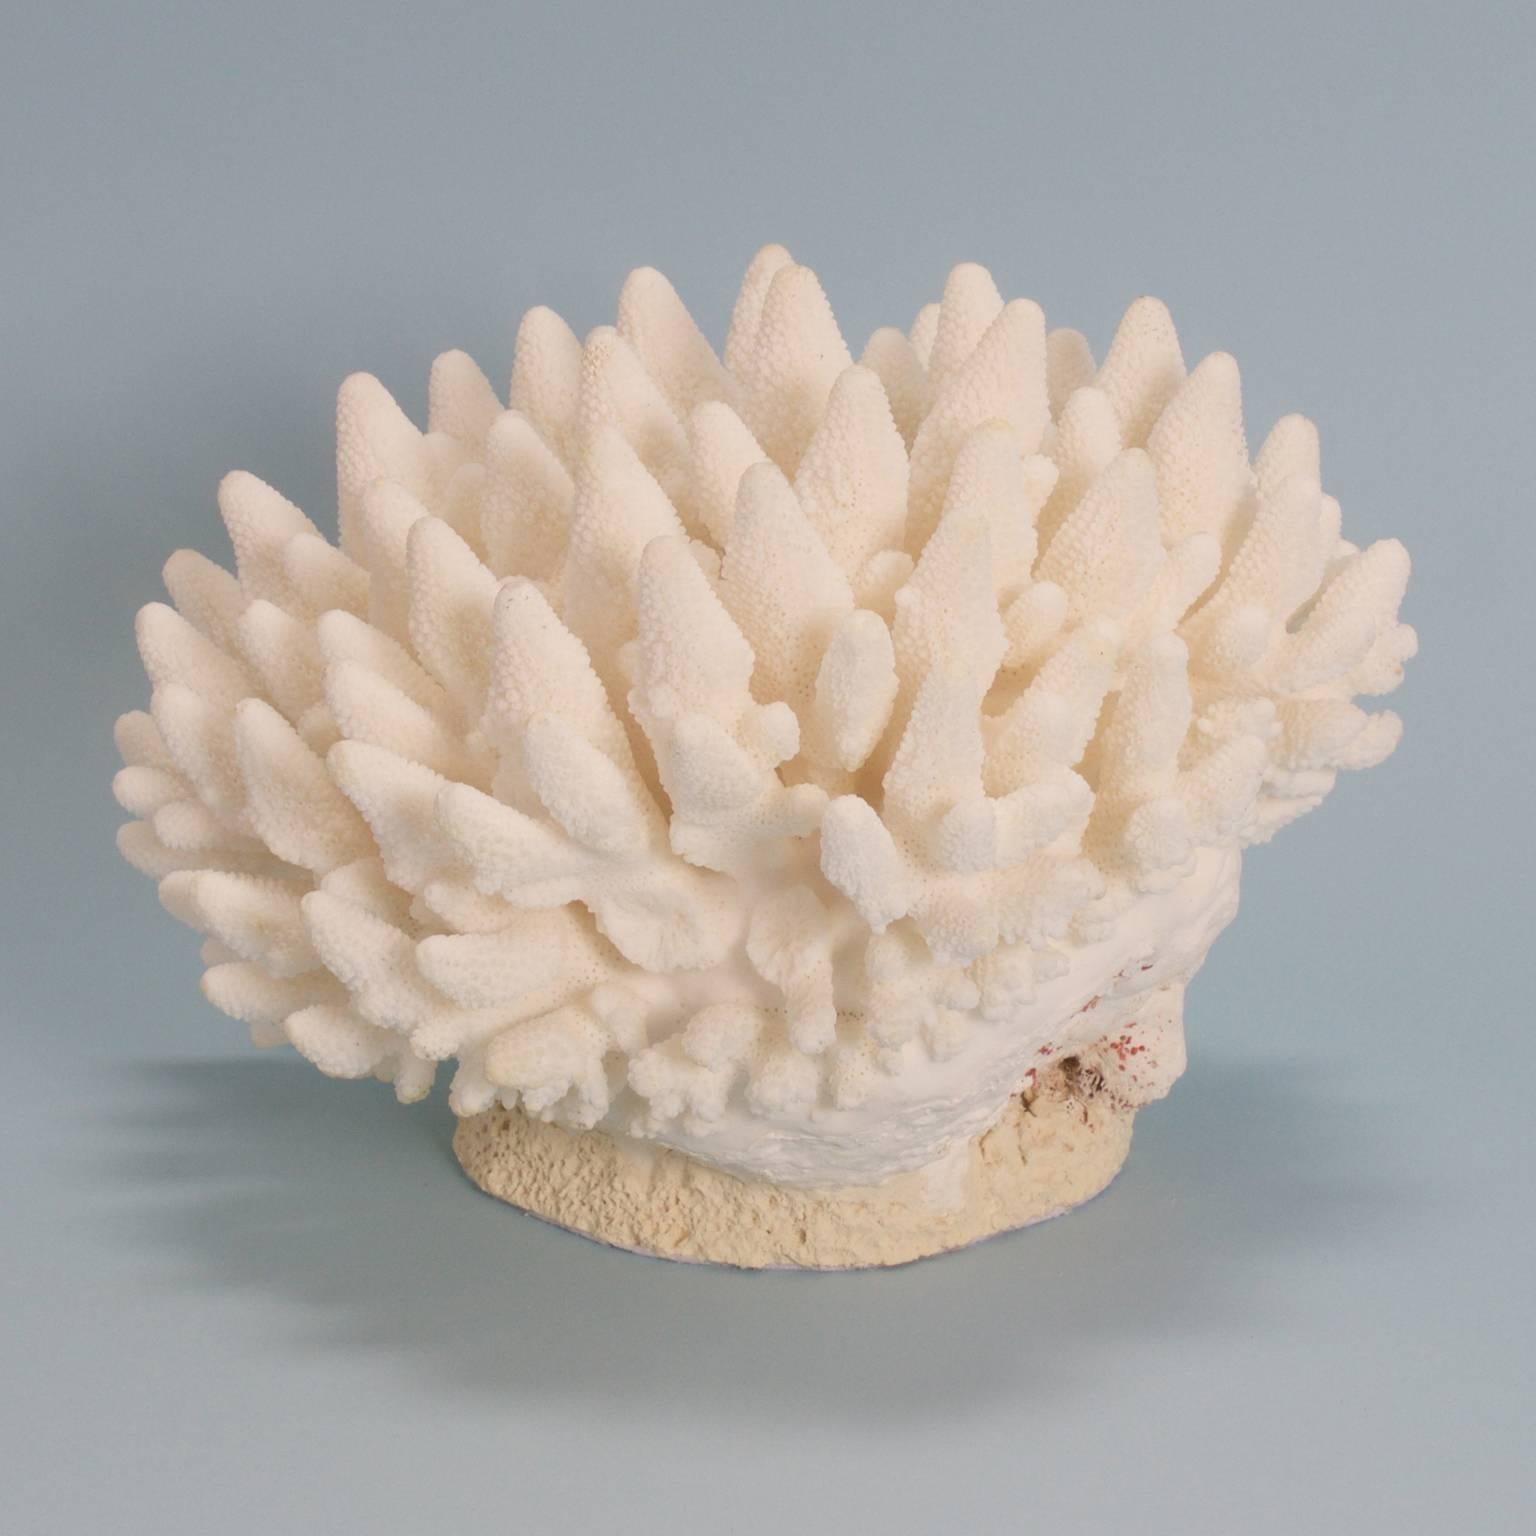 Entworfen und hergestellt von F.S. Henemader, diese Fingerkorallenskulptur hat eine einladende organische Farbe und Form. Dieses authentische Korallengeschenk von Mutter Natur wertet jede Einrichtung auf.

Dieses Stück kann nicht aus den USA